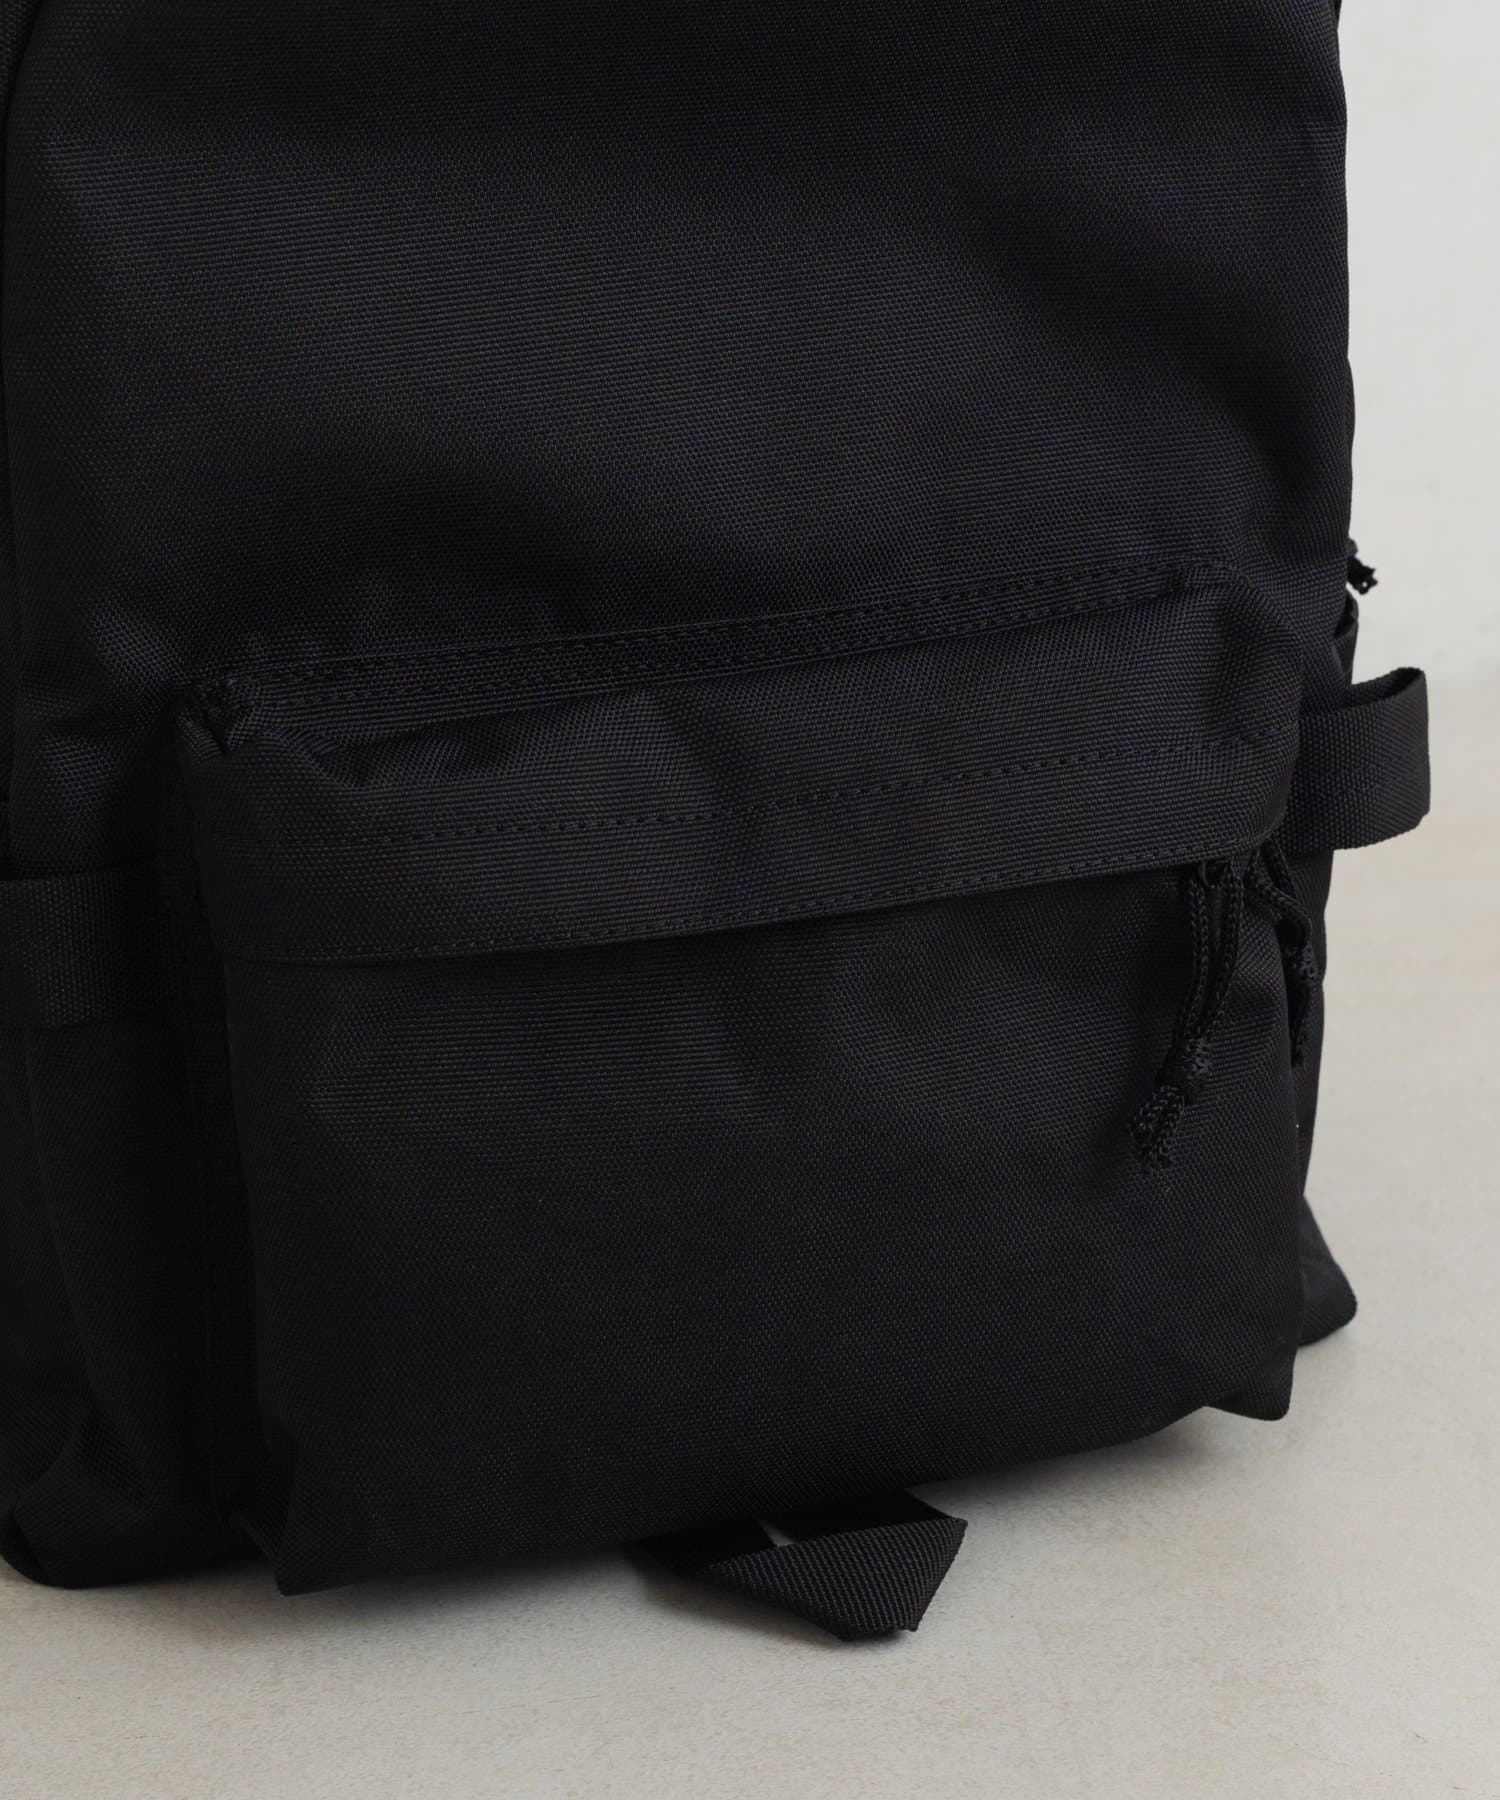 Kastane(カスタネ) 【Dickies】Backpack